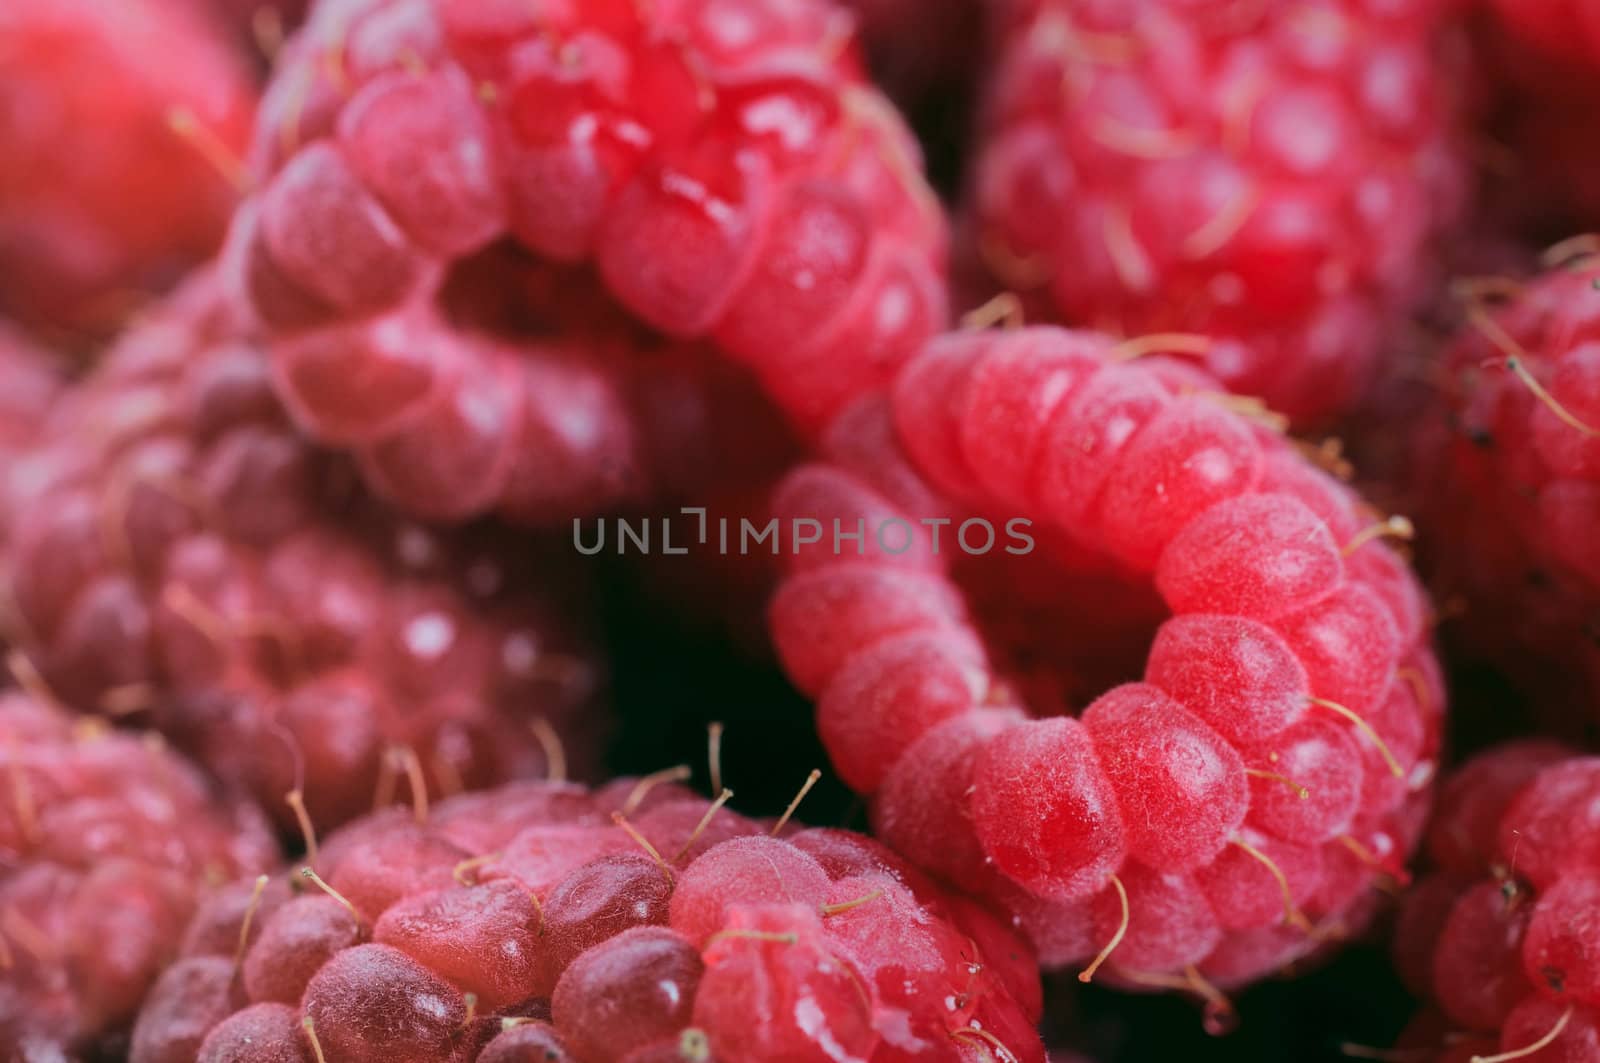 Raspberries background by iryna_rasko